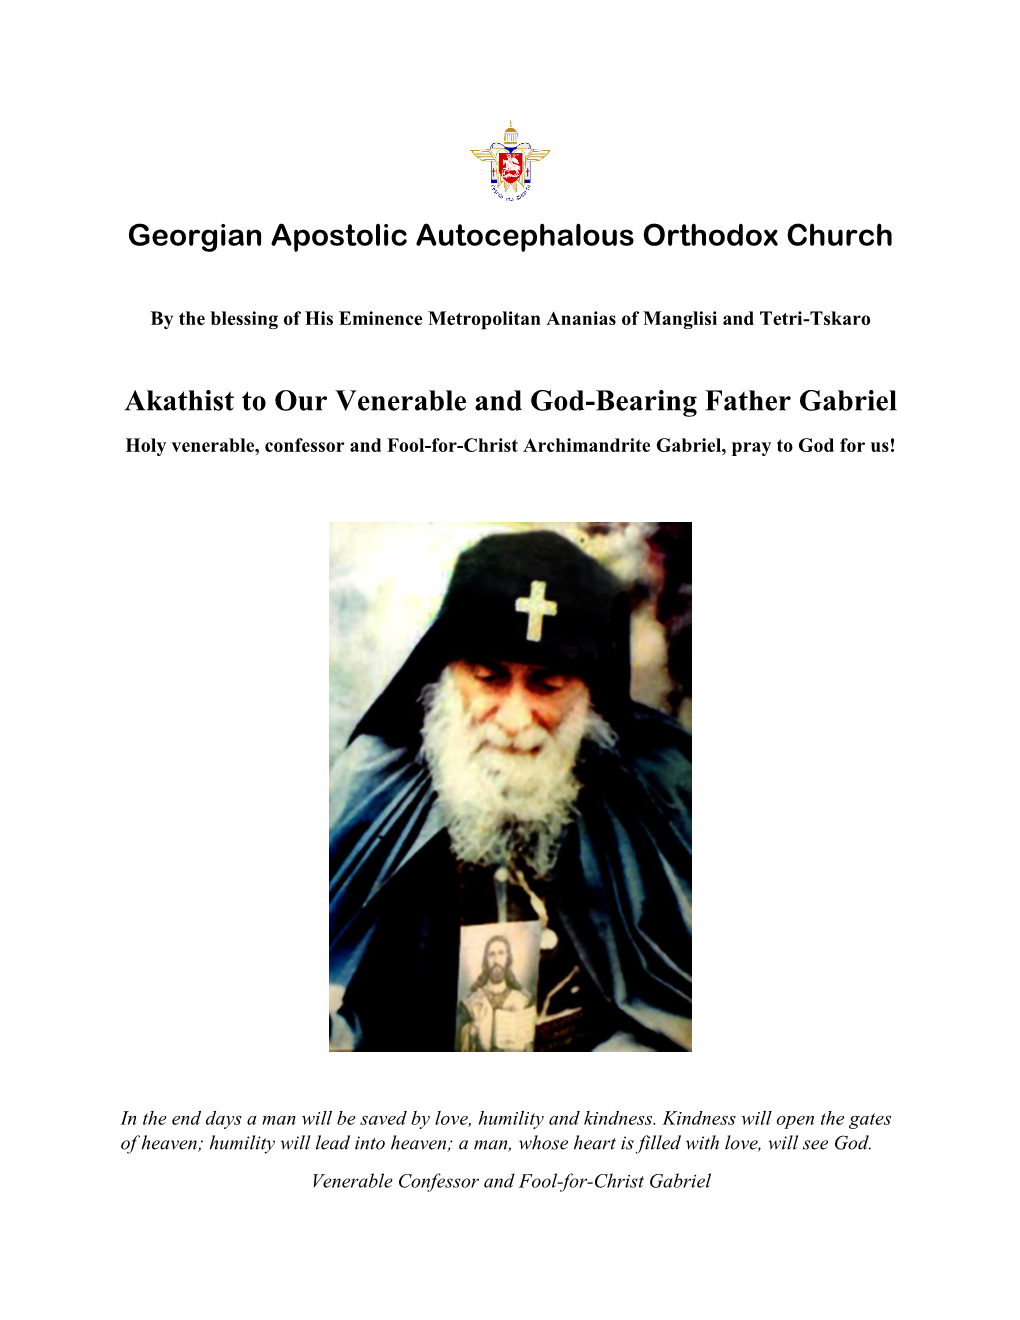 Georgian Apostolic Autocephalous Orthodox Church Akathist to Our